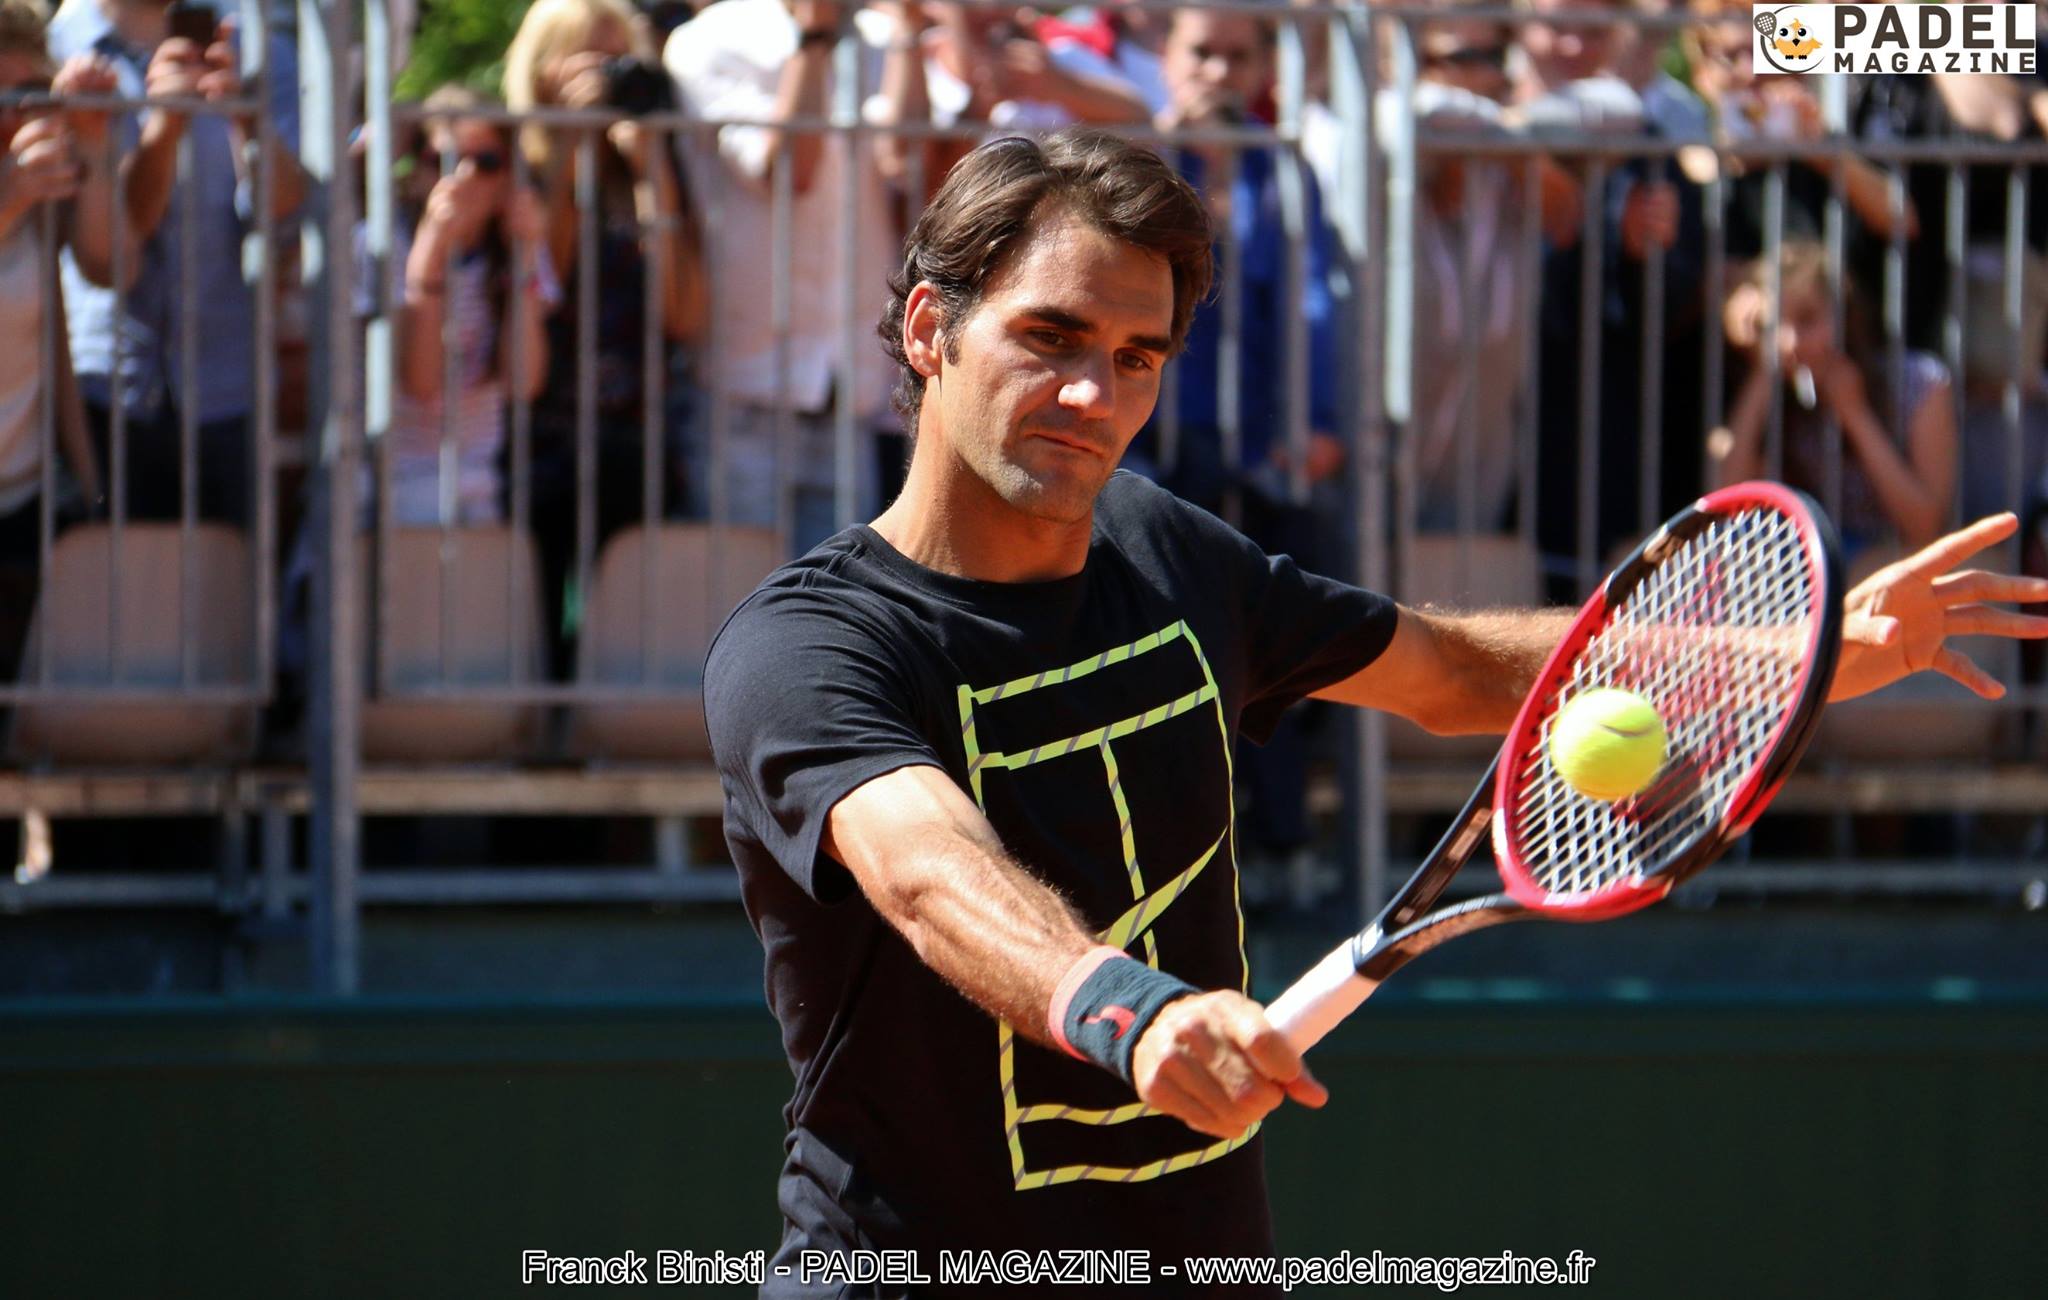 Roger Federer kl padel : drøm eller fremtidig virkelighed?